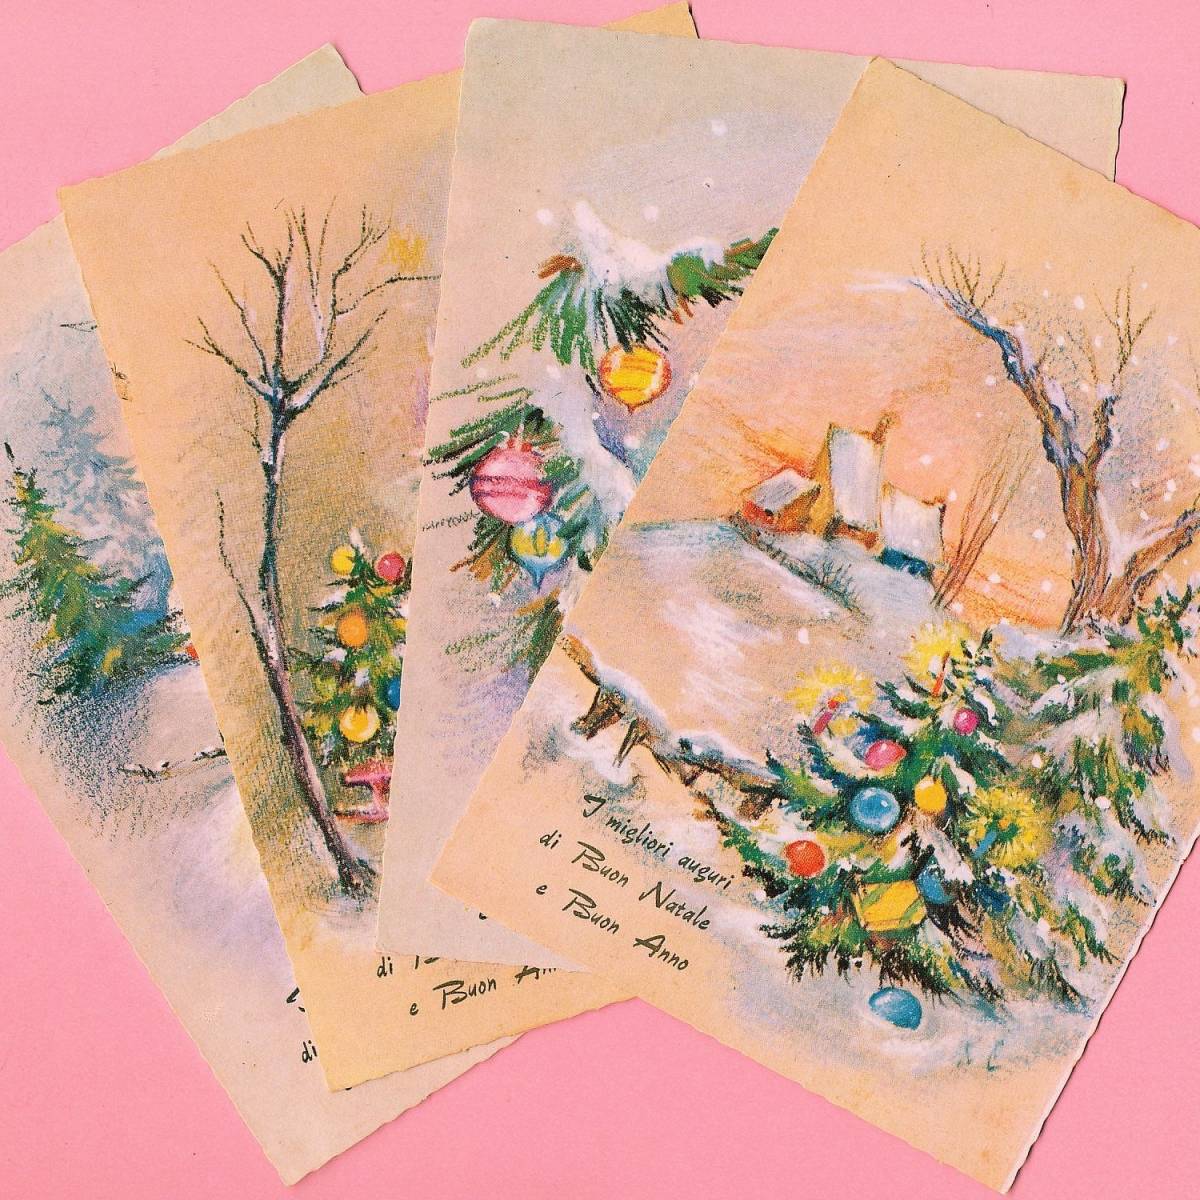 بطاقات بريدية عتيقة (42) H33 ◆ مجموعة من 4 بطاقات بريدية لعيد الميلاد ورأس السنة في فرنسا وألمانيا وبلجيكا وإيطاليا والمملكة المتحدة, العتيقة, مجموعة, بضائع متنوعة, بطاقة بريدية